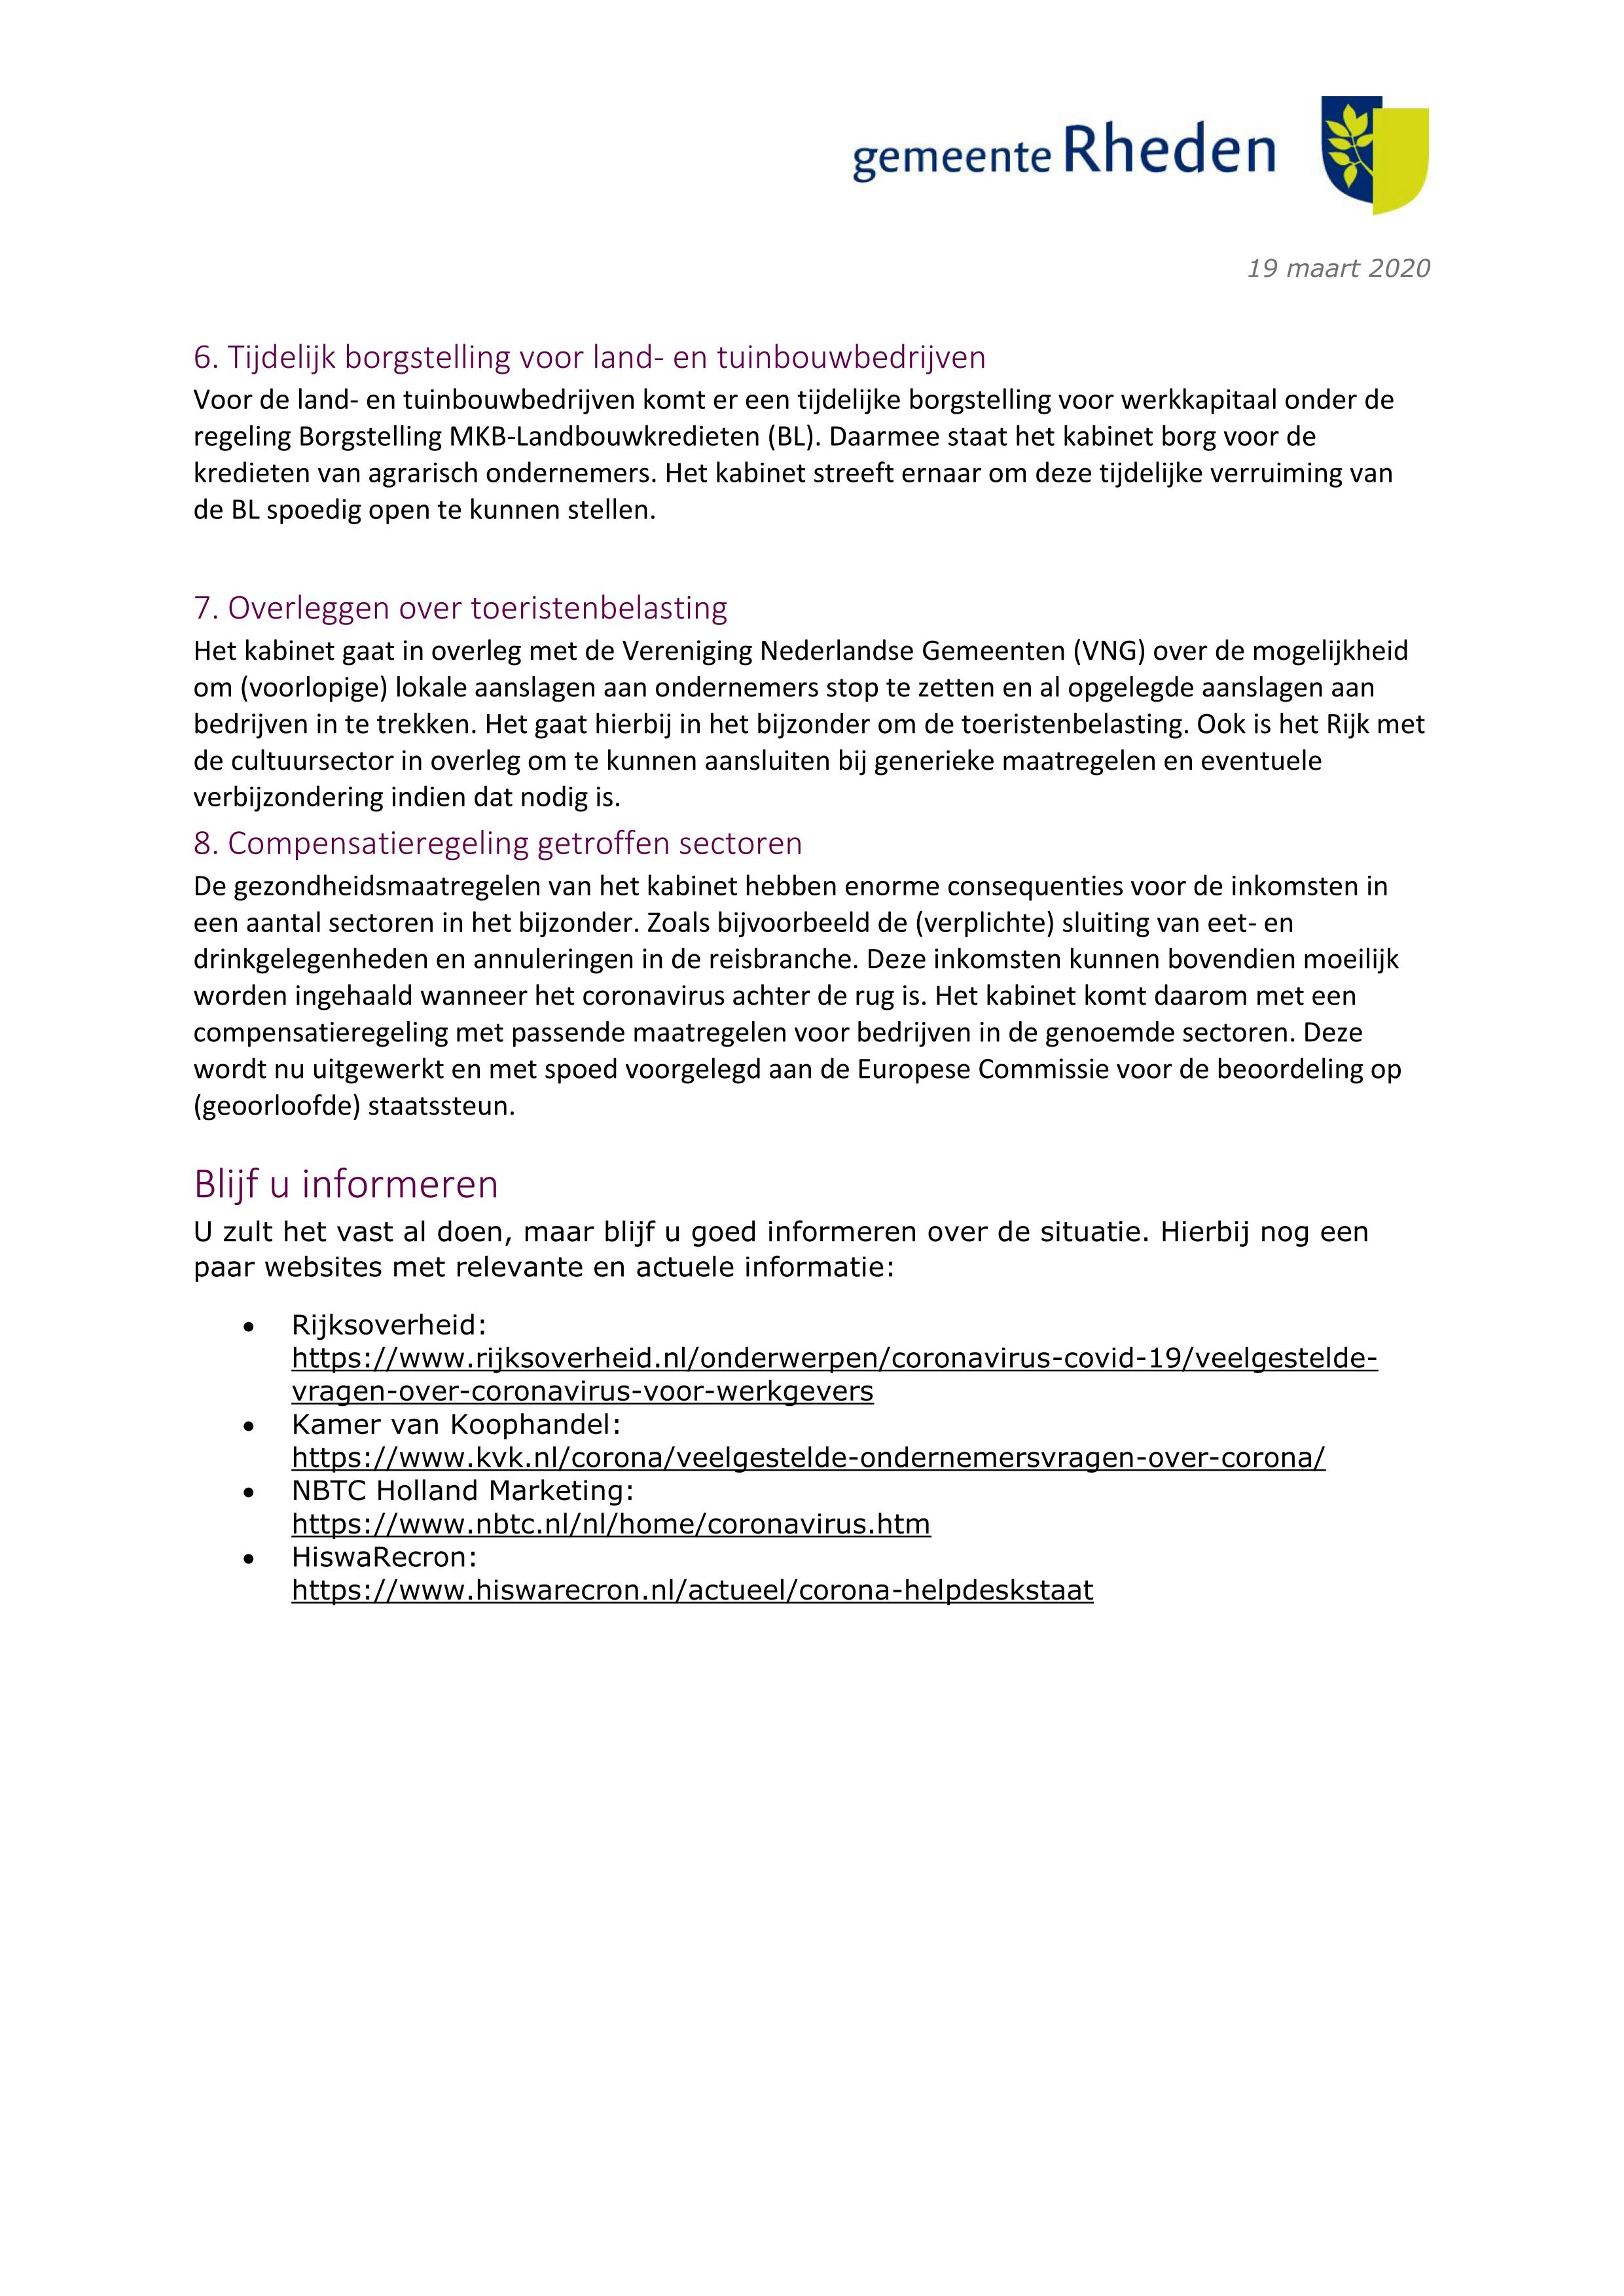 Coronavirus informatie voor ondernemers 19 3 20 blz 3